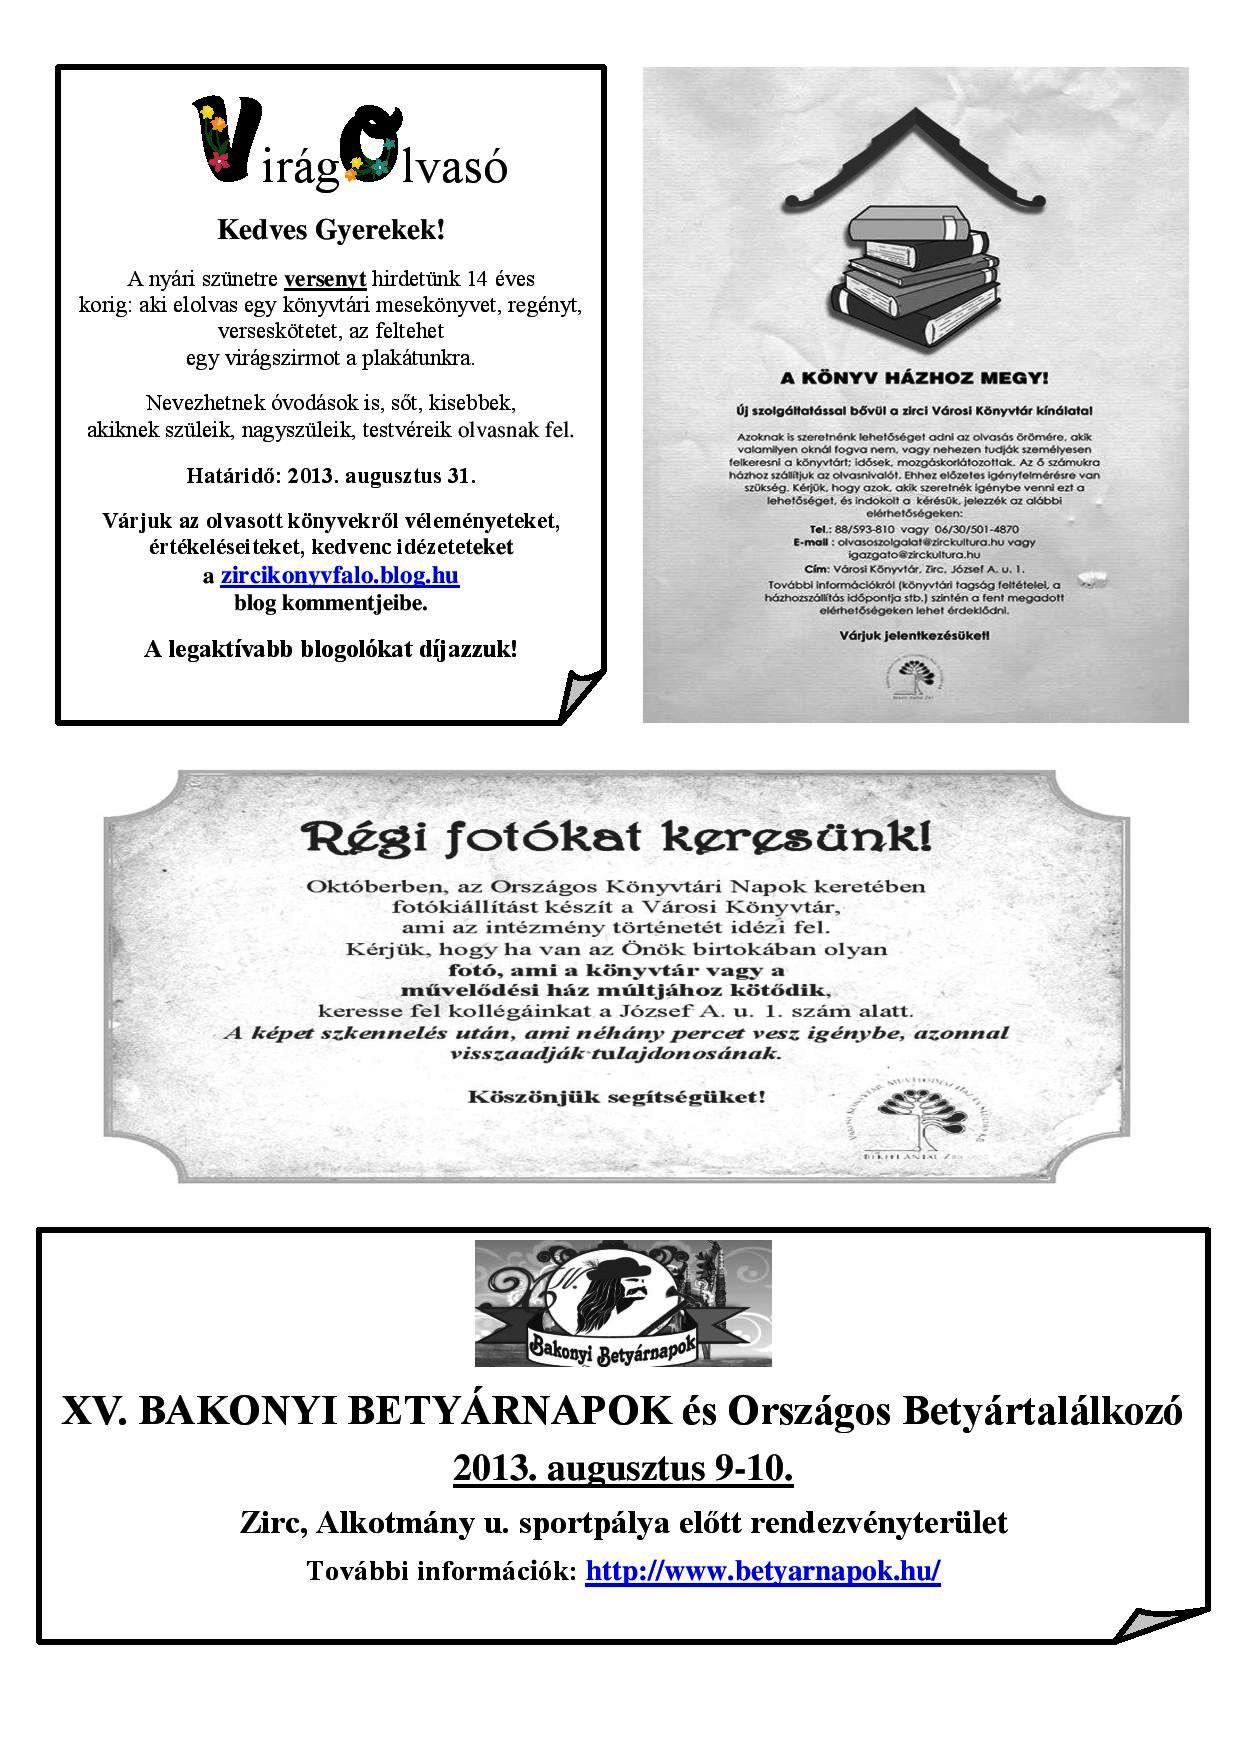 BAVKMHSKB-Zirc-2013.08.augusztusi programajánló 2.jpg